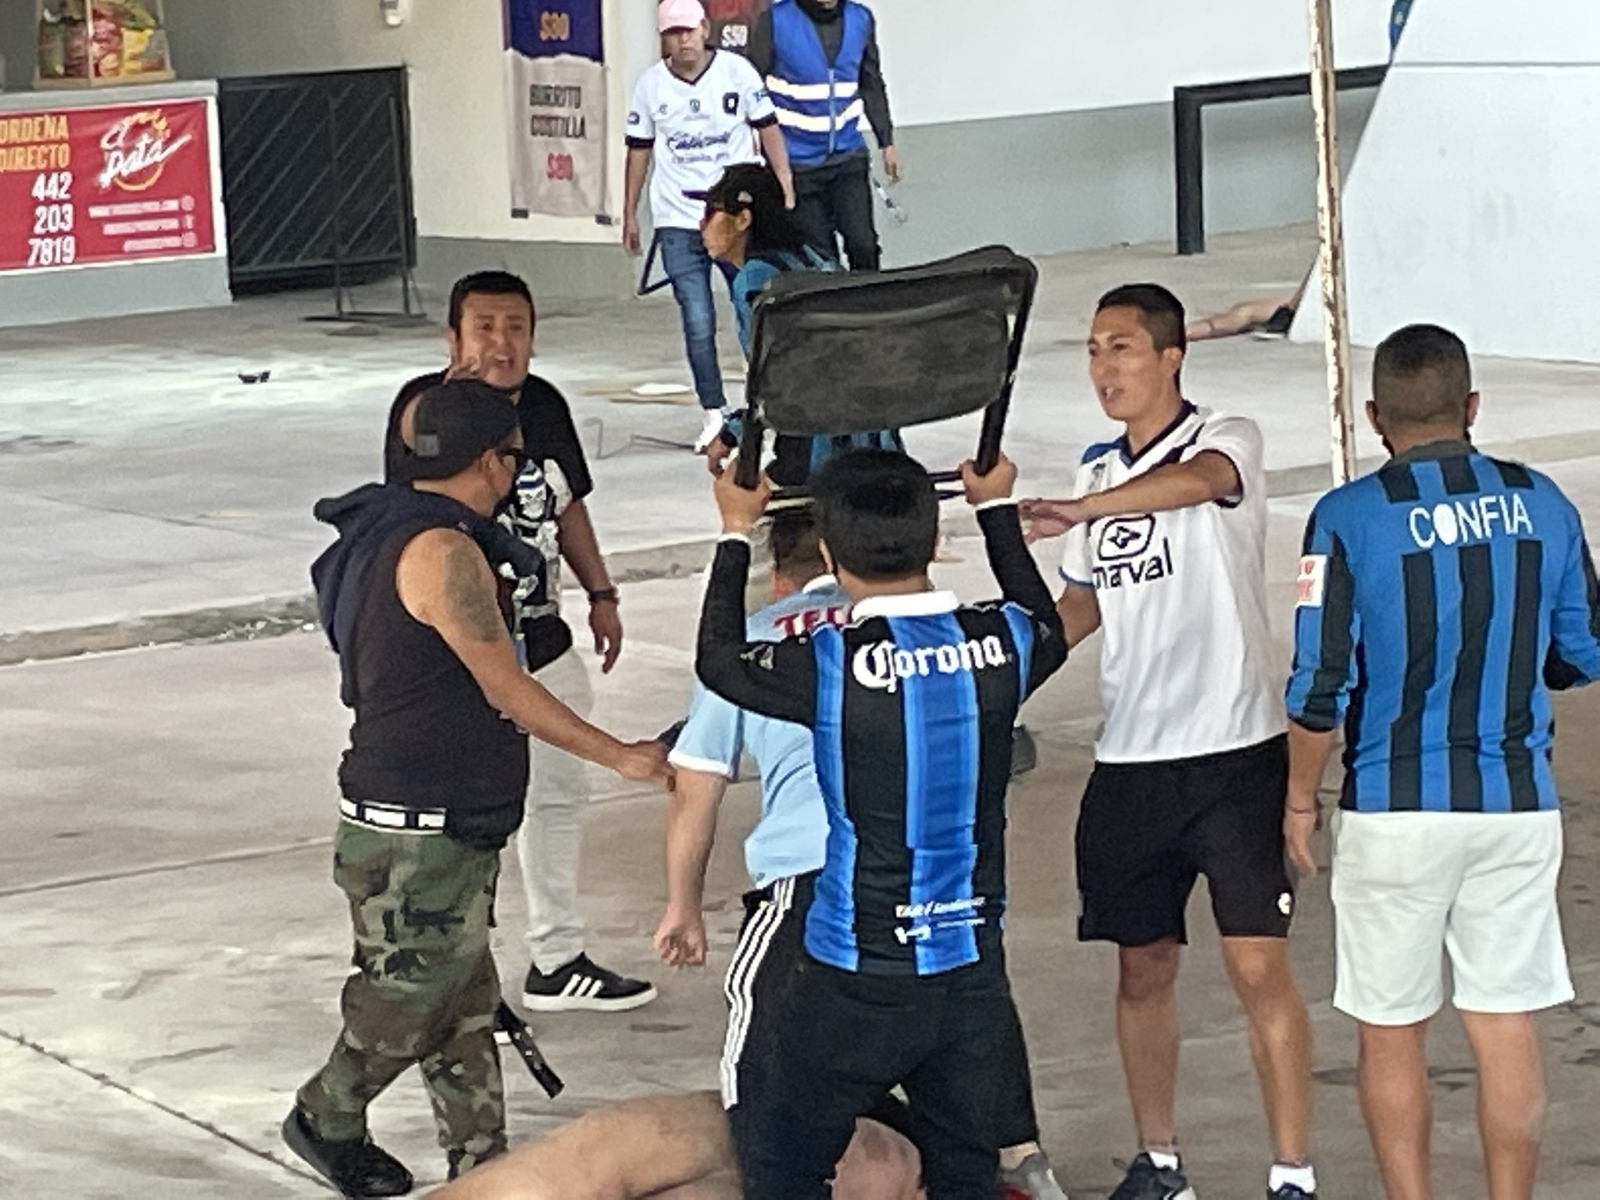 En un video grabado por aficionados del Querétaro se ve como seguidores del Atlas comienzan a insultar e incitar a pelearse con los aficionados del equipo contrario